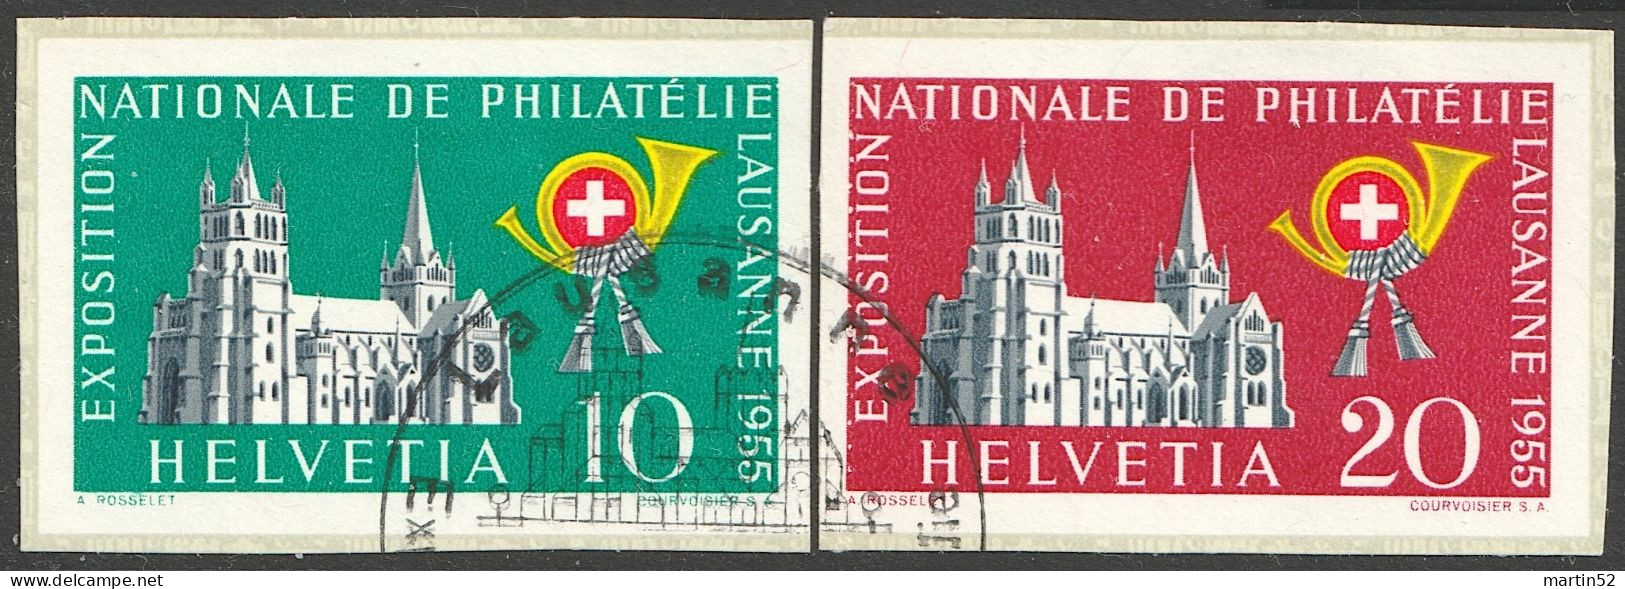 Schweiz Suisse 1955: "LAUSANNE" Zu WIII 33+34 Mi 611+612 (aus Block 15) Yv Du BF 15 Mit EXPO-⊙ Lausanne (Zu CHF 80.00) - Blocs & Feuillets